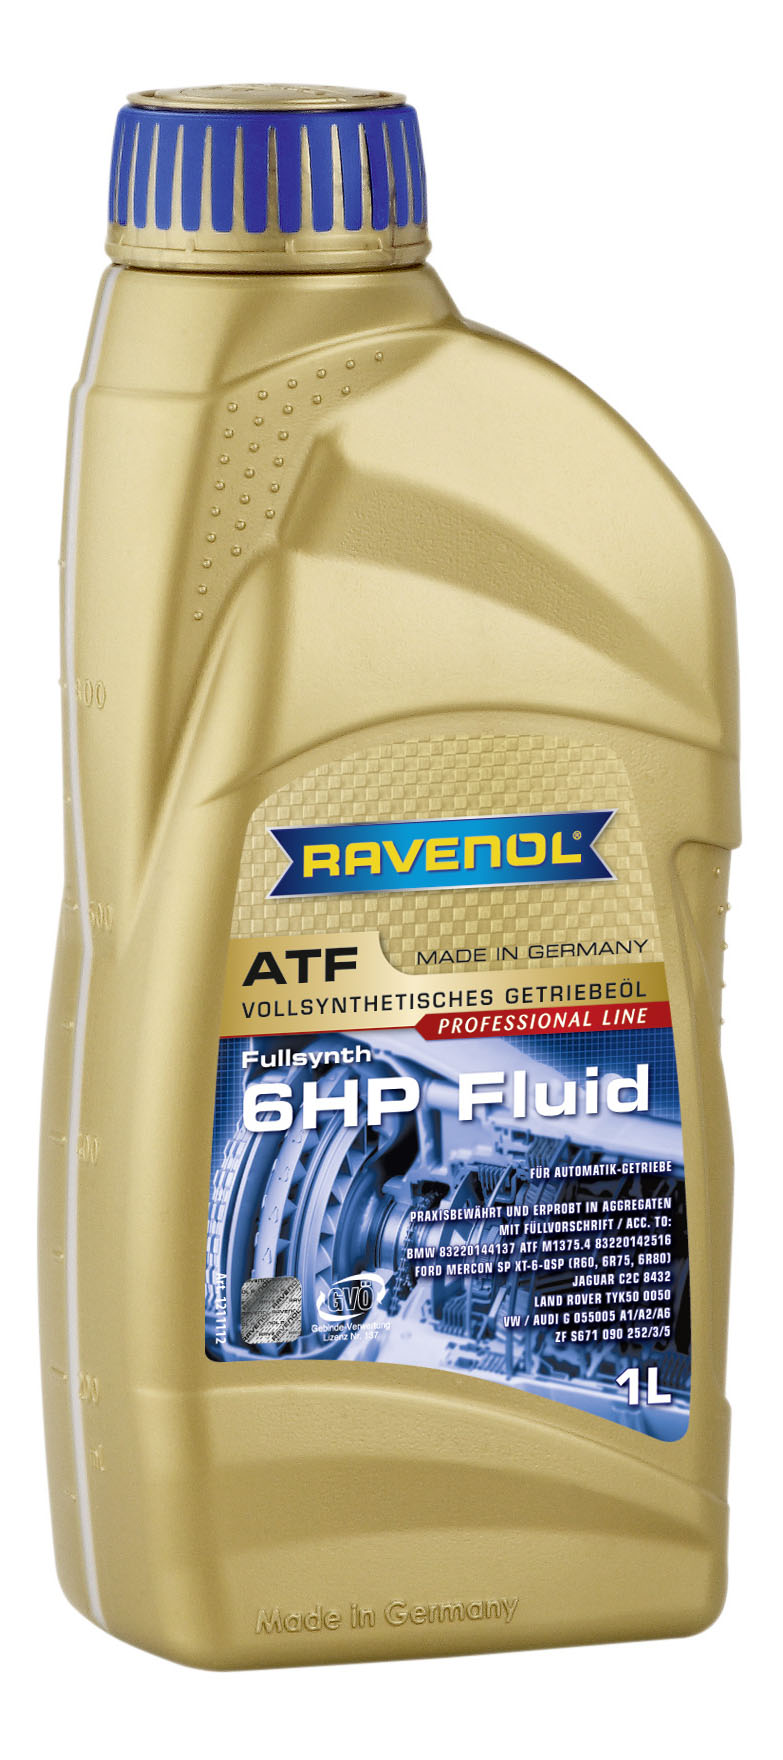 Трансмиссионное масло RAVENOL ATF 6 HP Fluid (1л) new